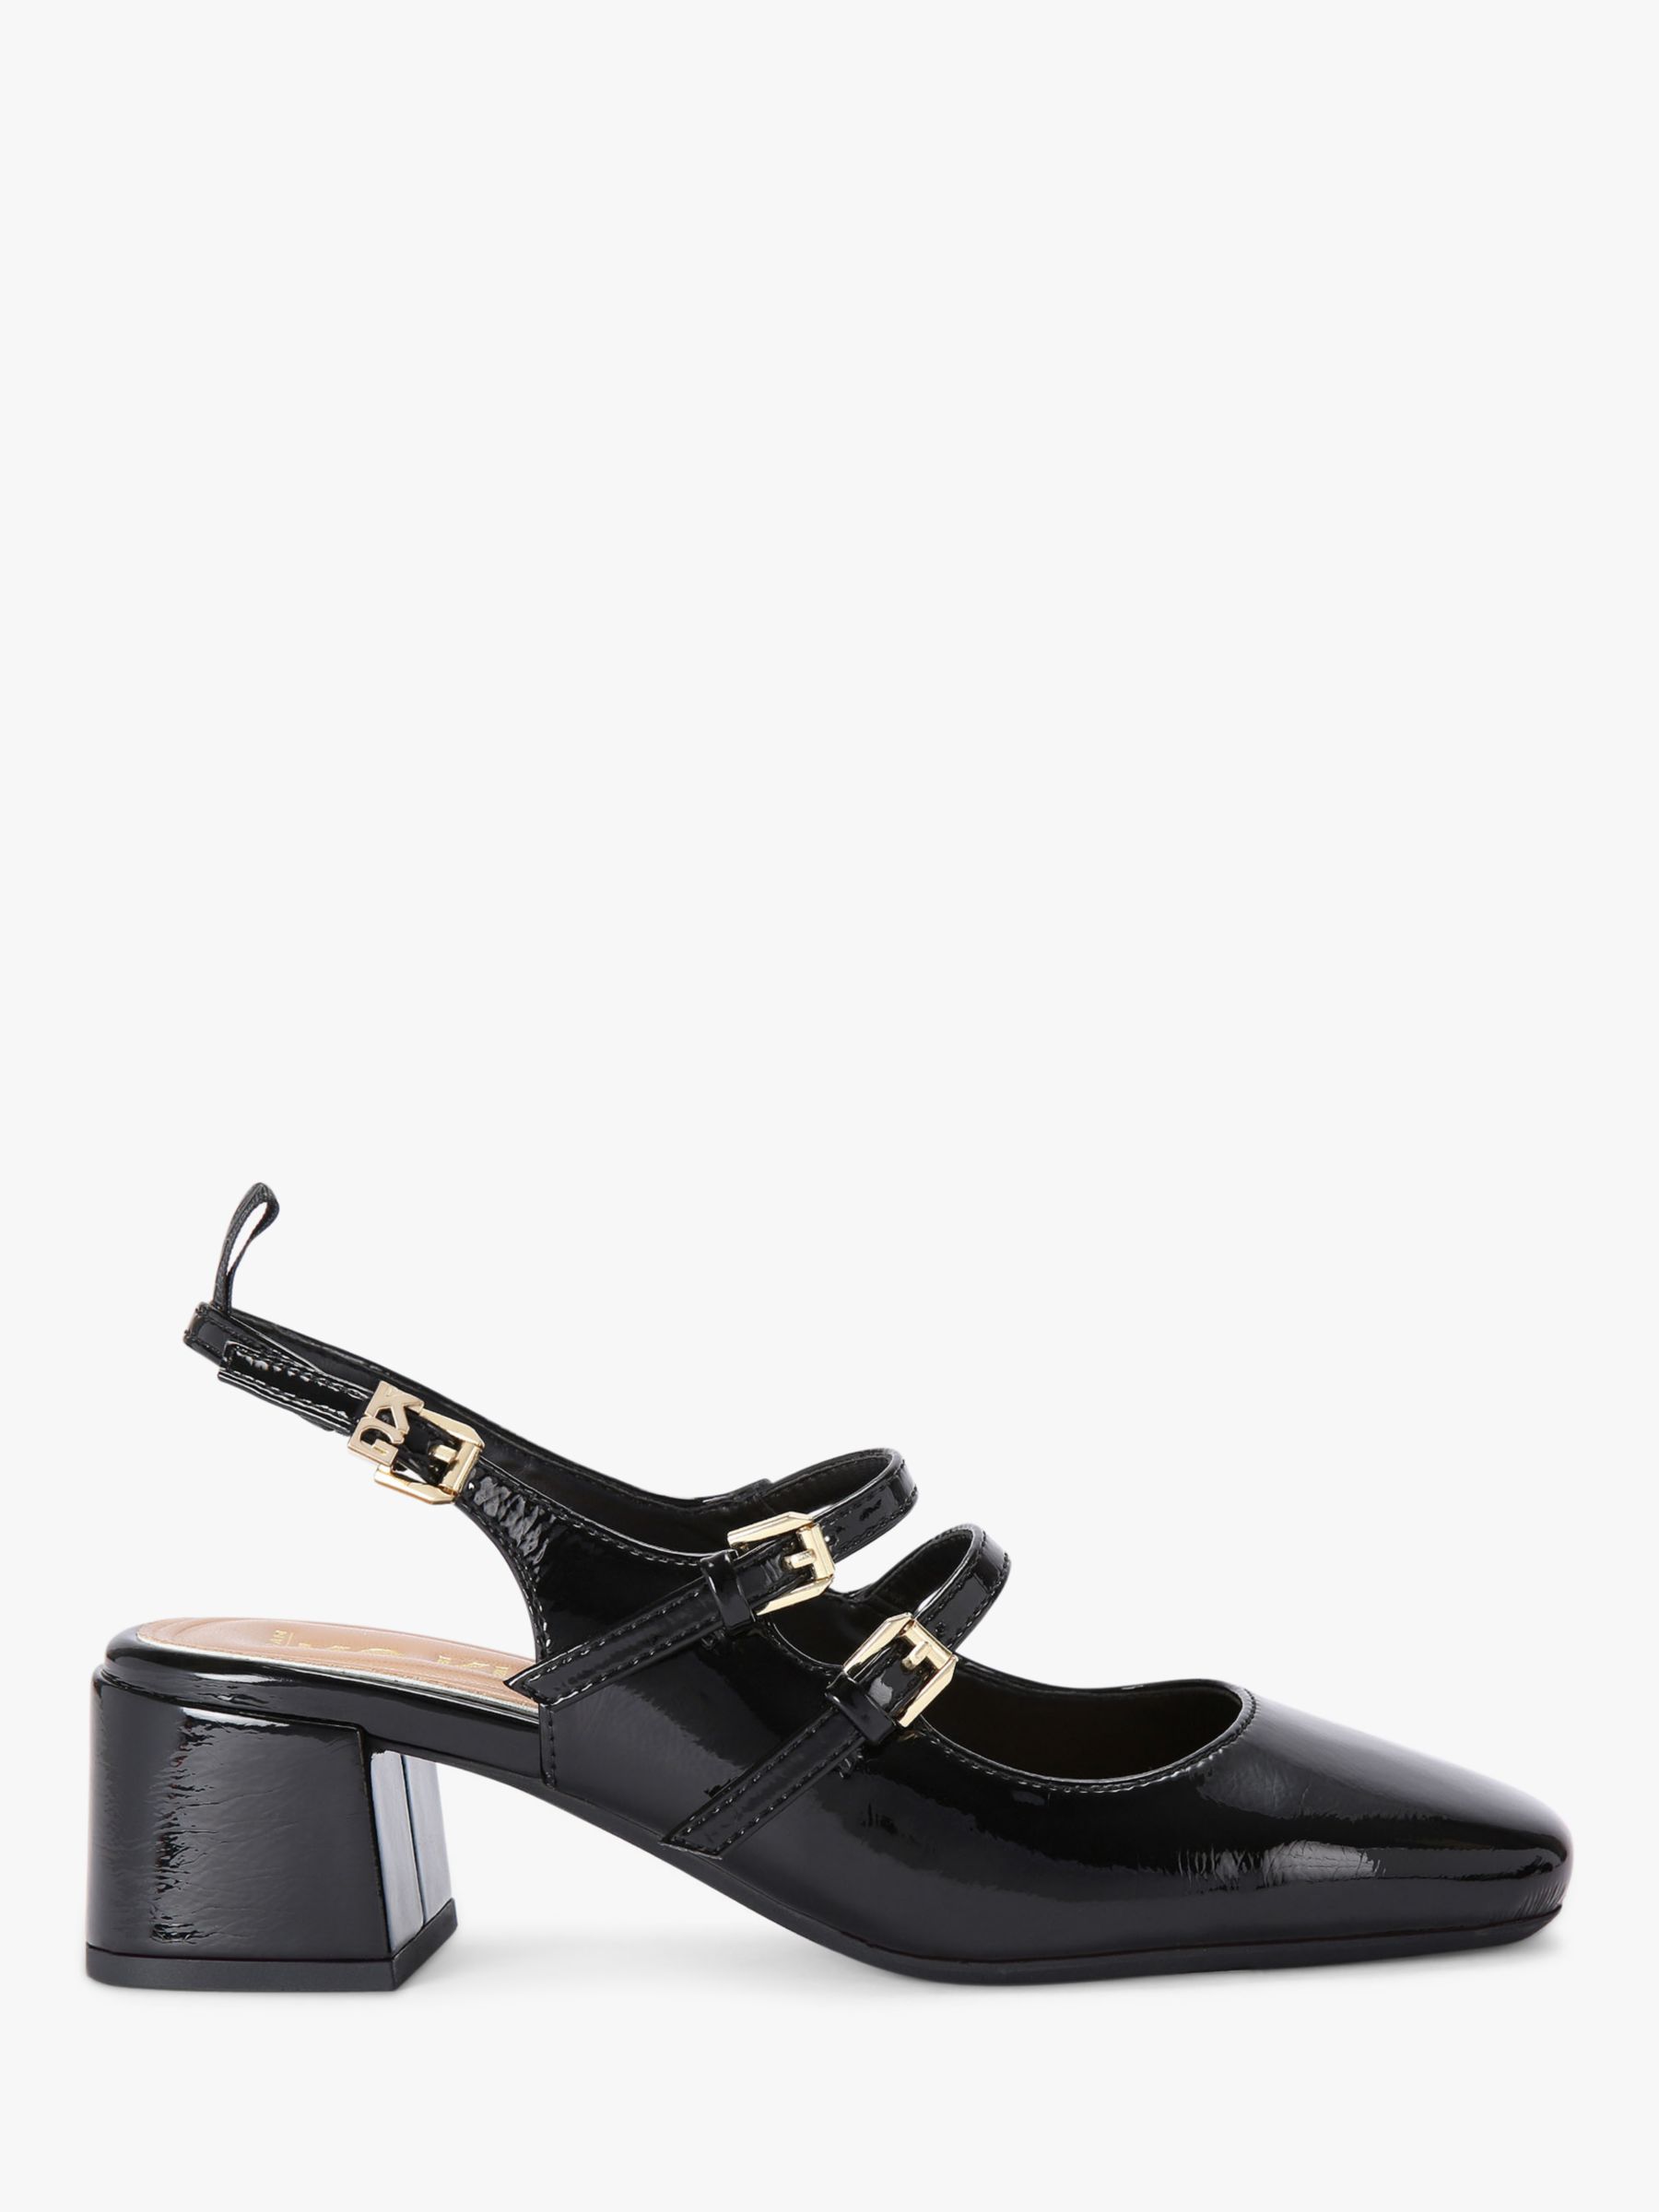 KG Kurt Geiger Amy Double Strap Court Shoes, Black at John Lewis & Partners